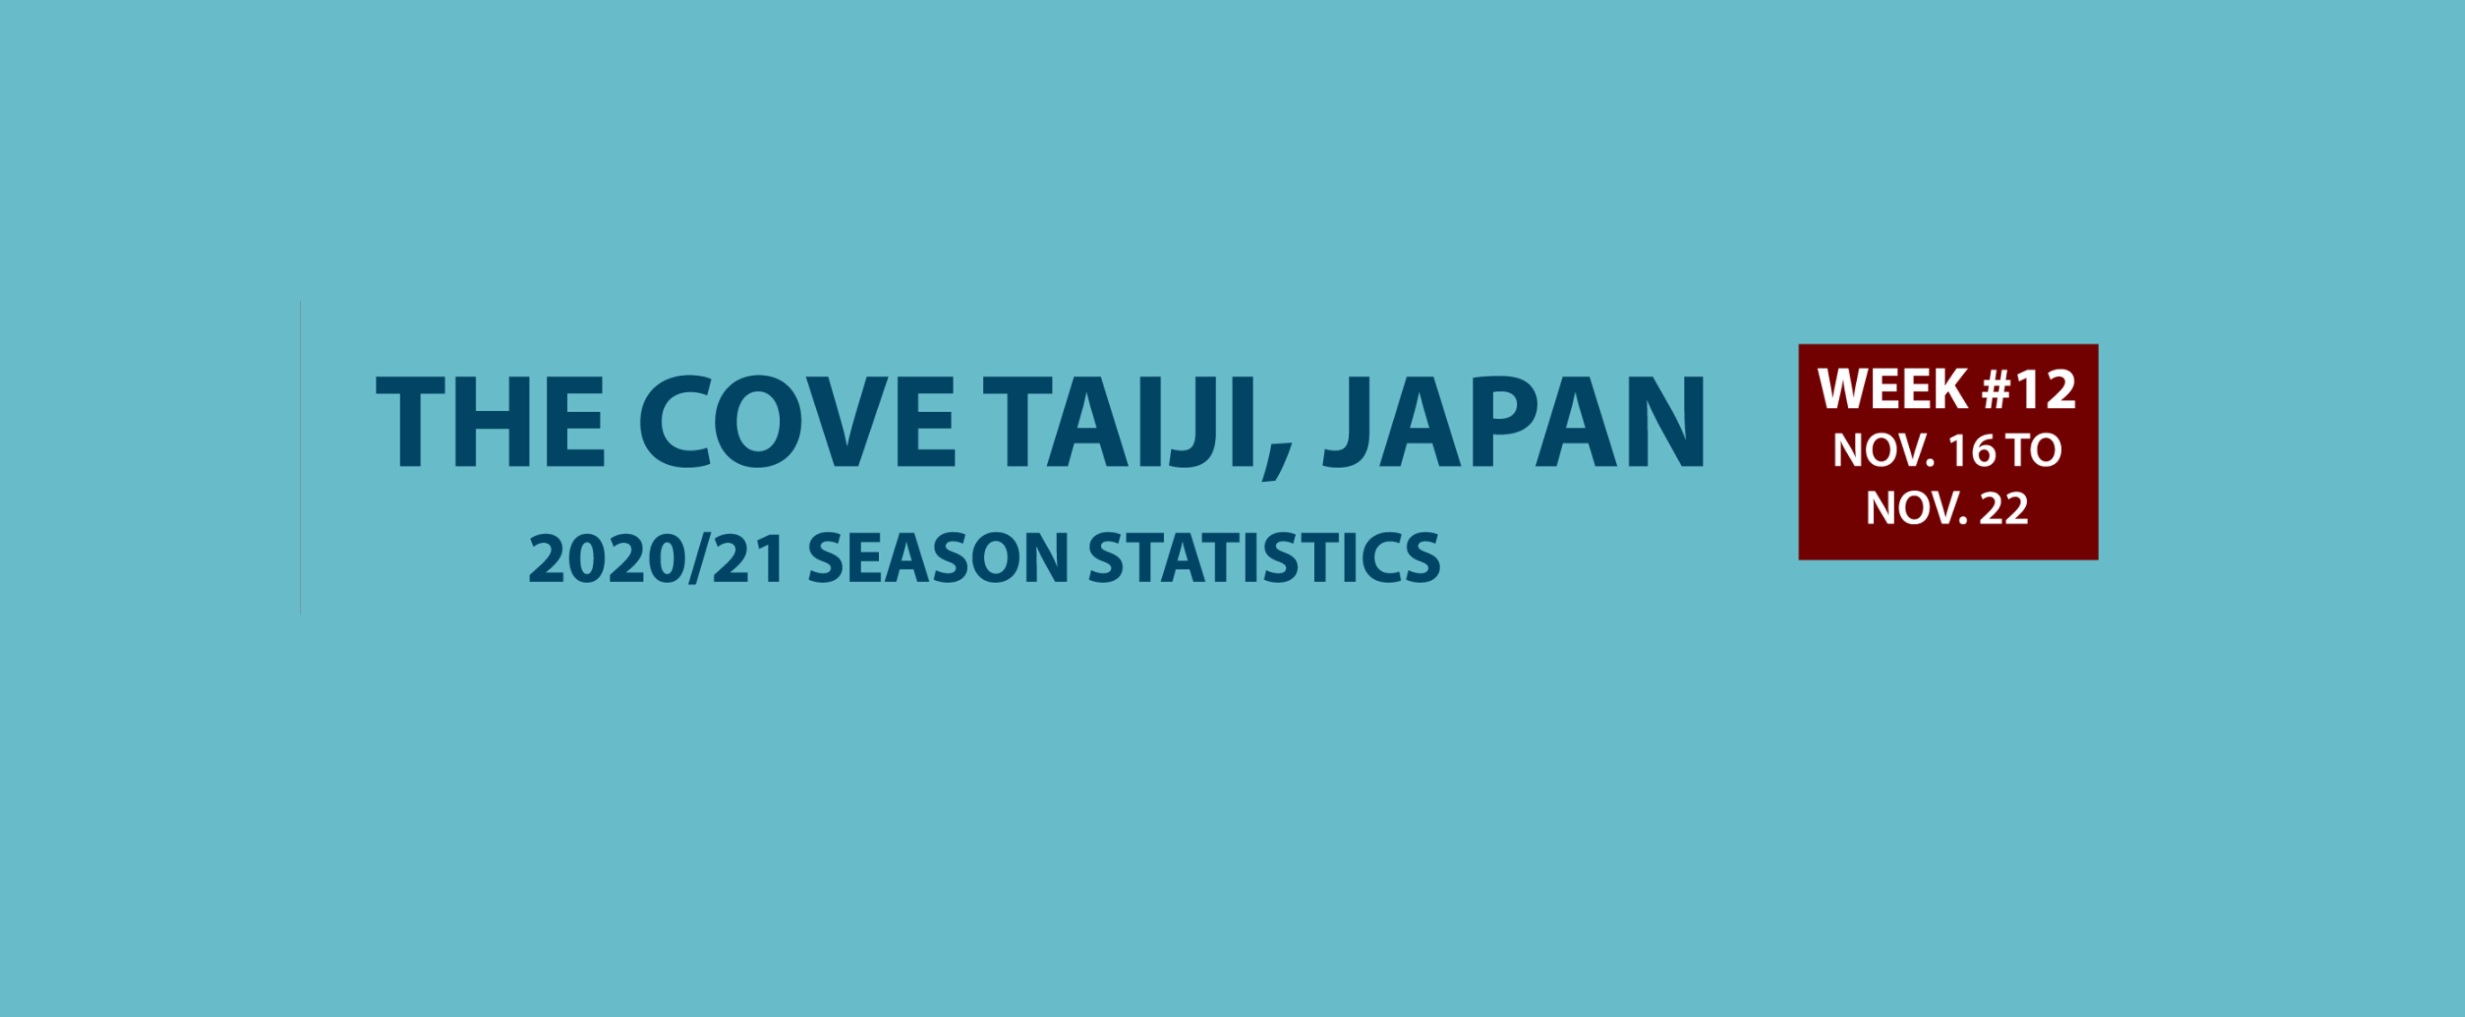 Chasse au dauphin à Taïji (Japon) – Bilan semaine du 16 au 22 novembre 2020 #12